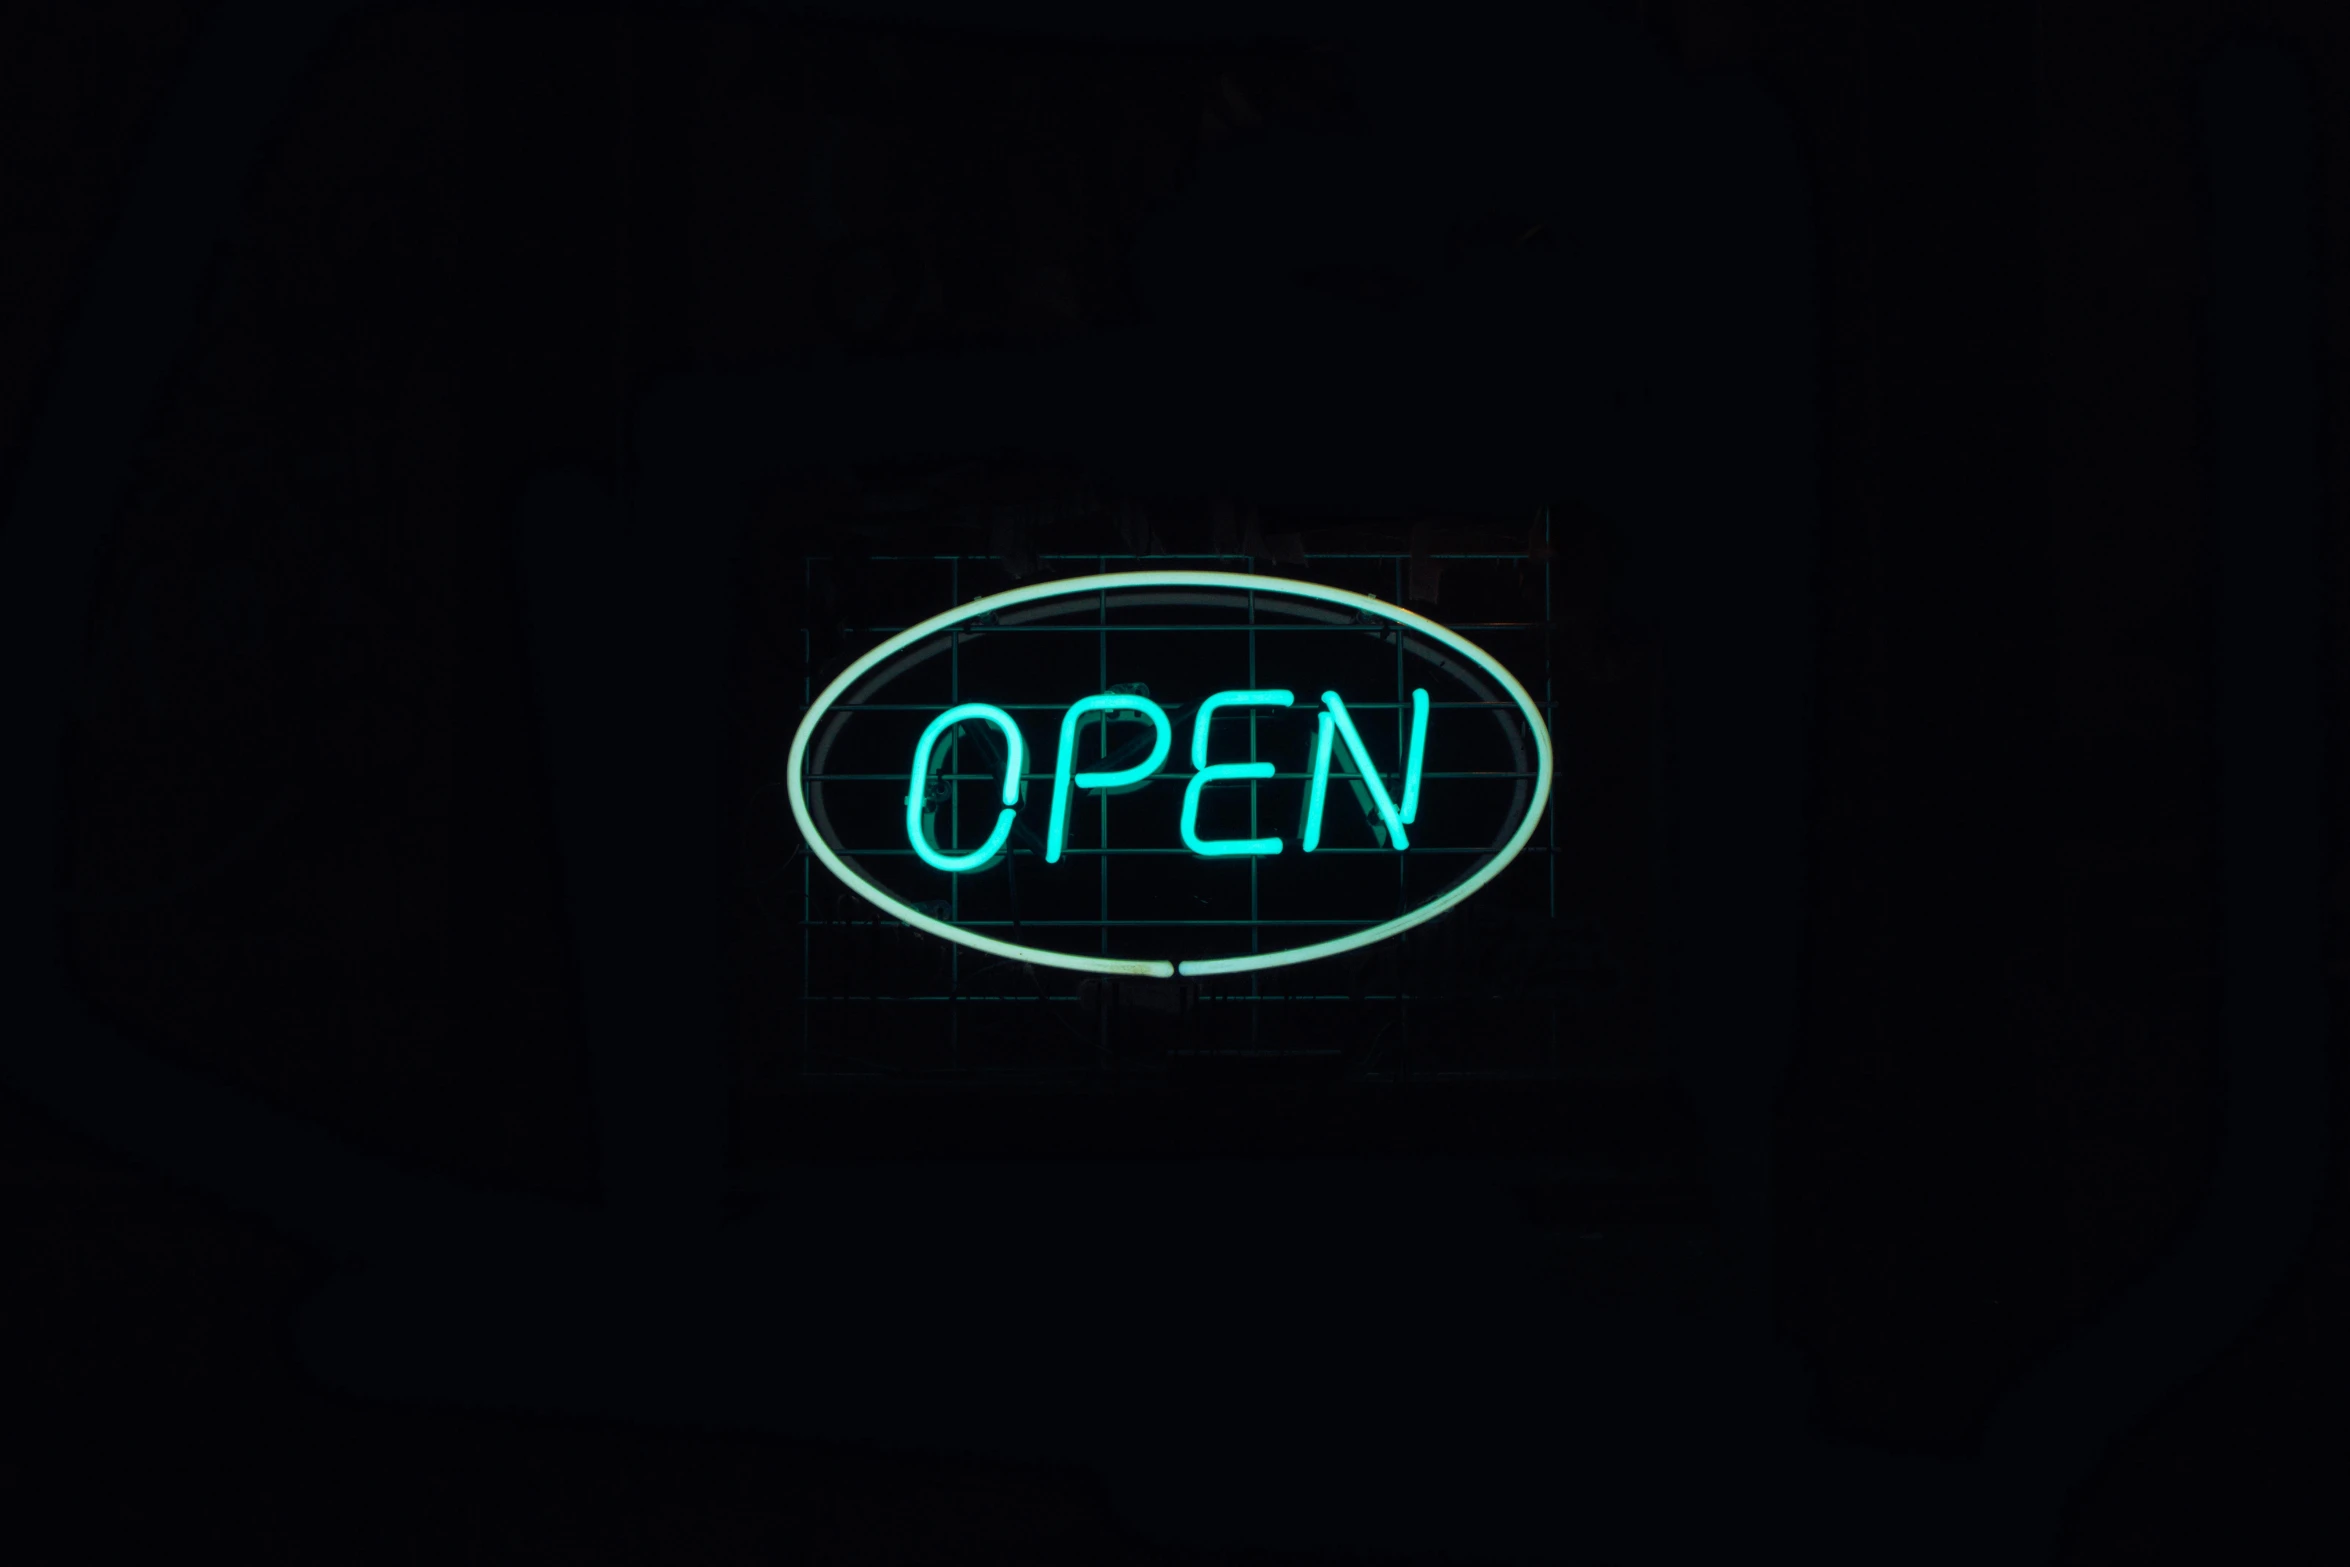 illuminated neon open sign on a dark background